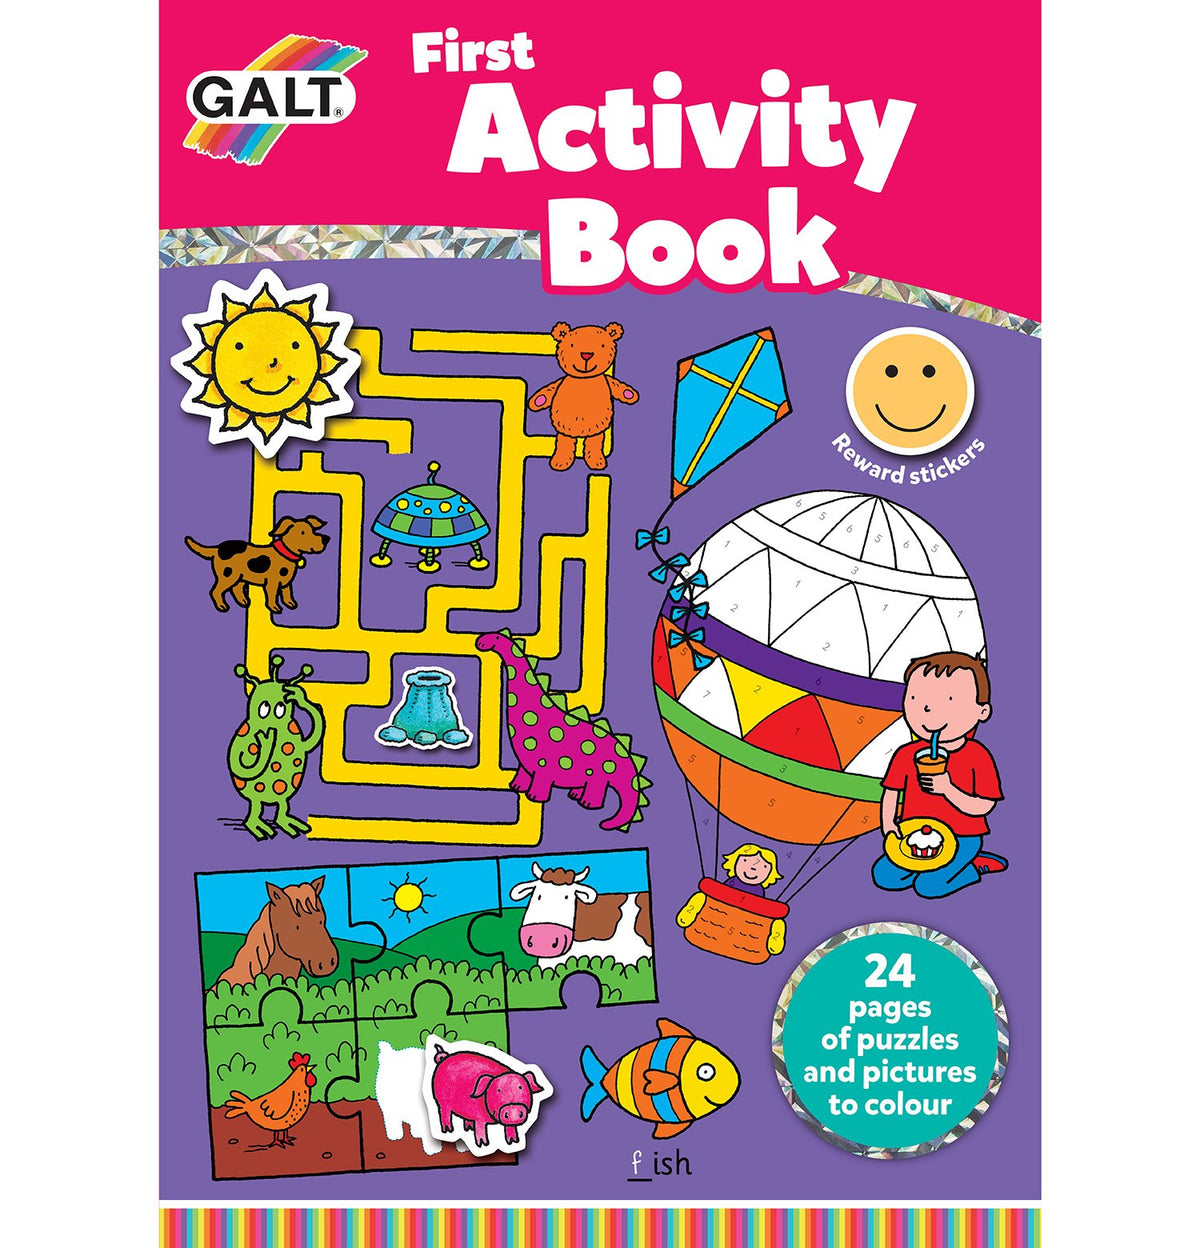 First Activity Book - Galt